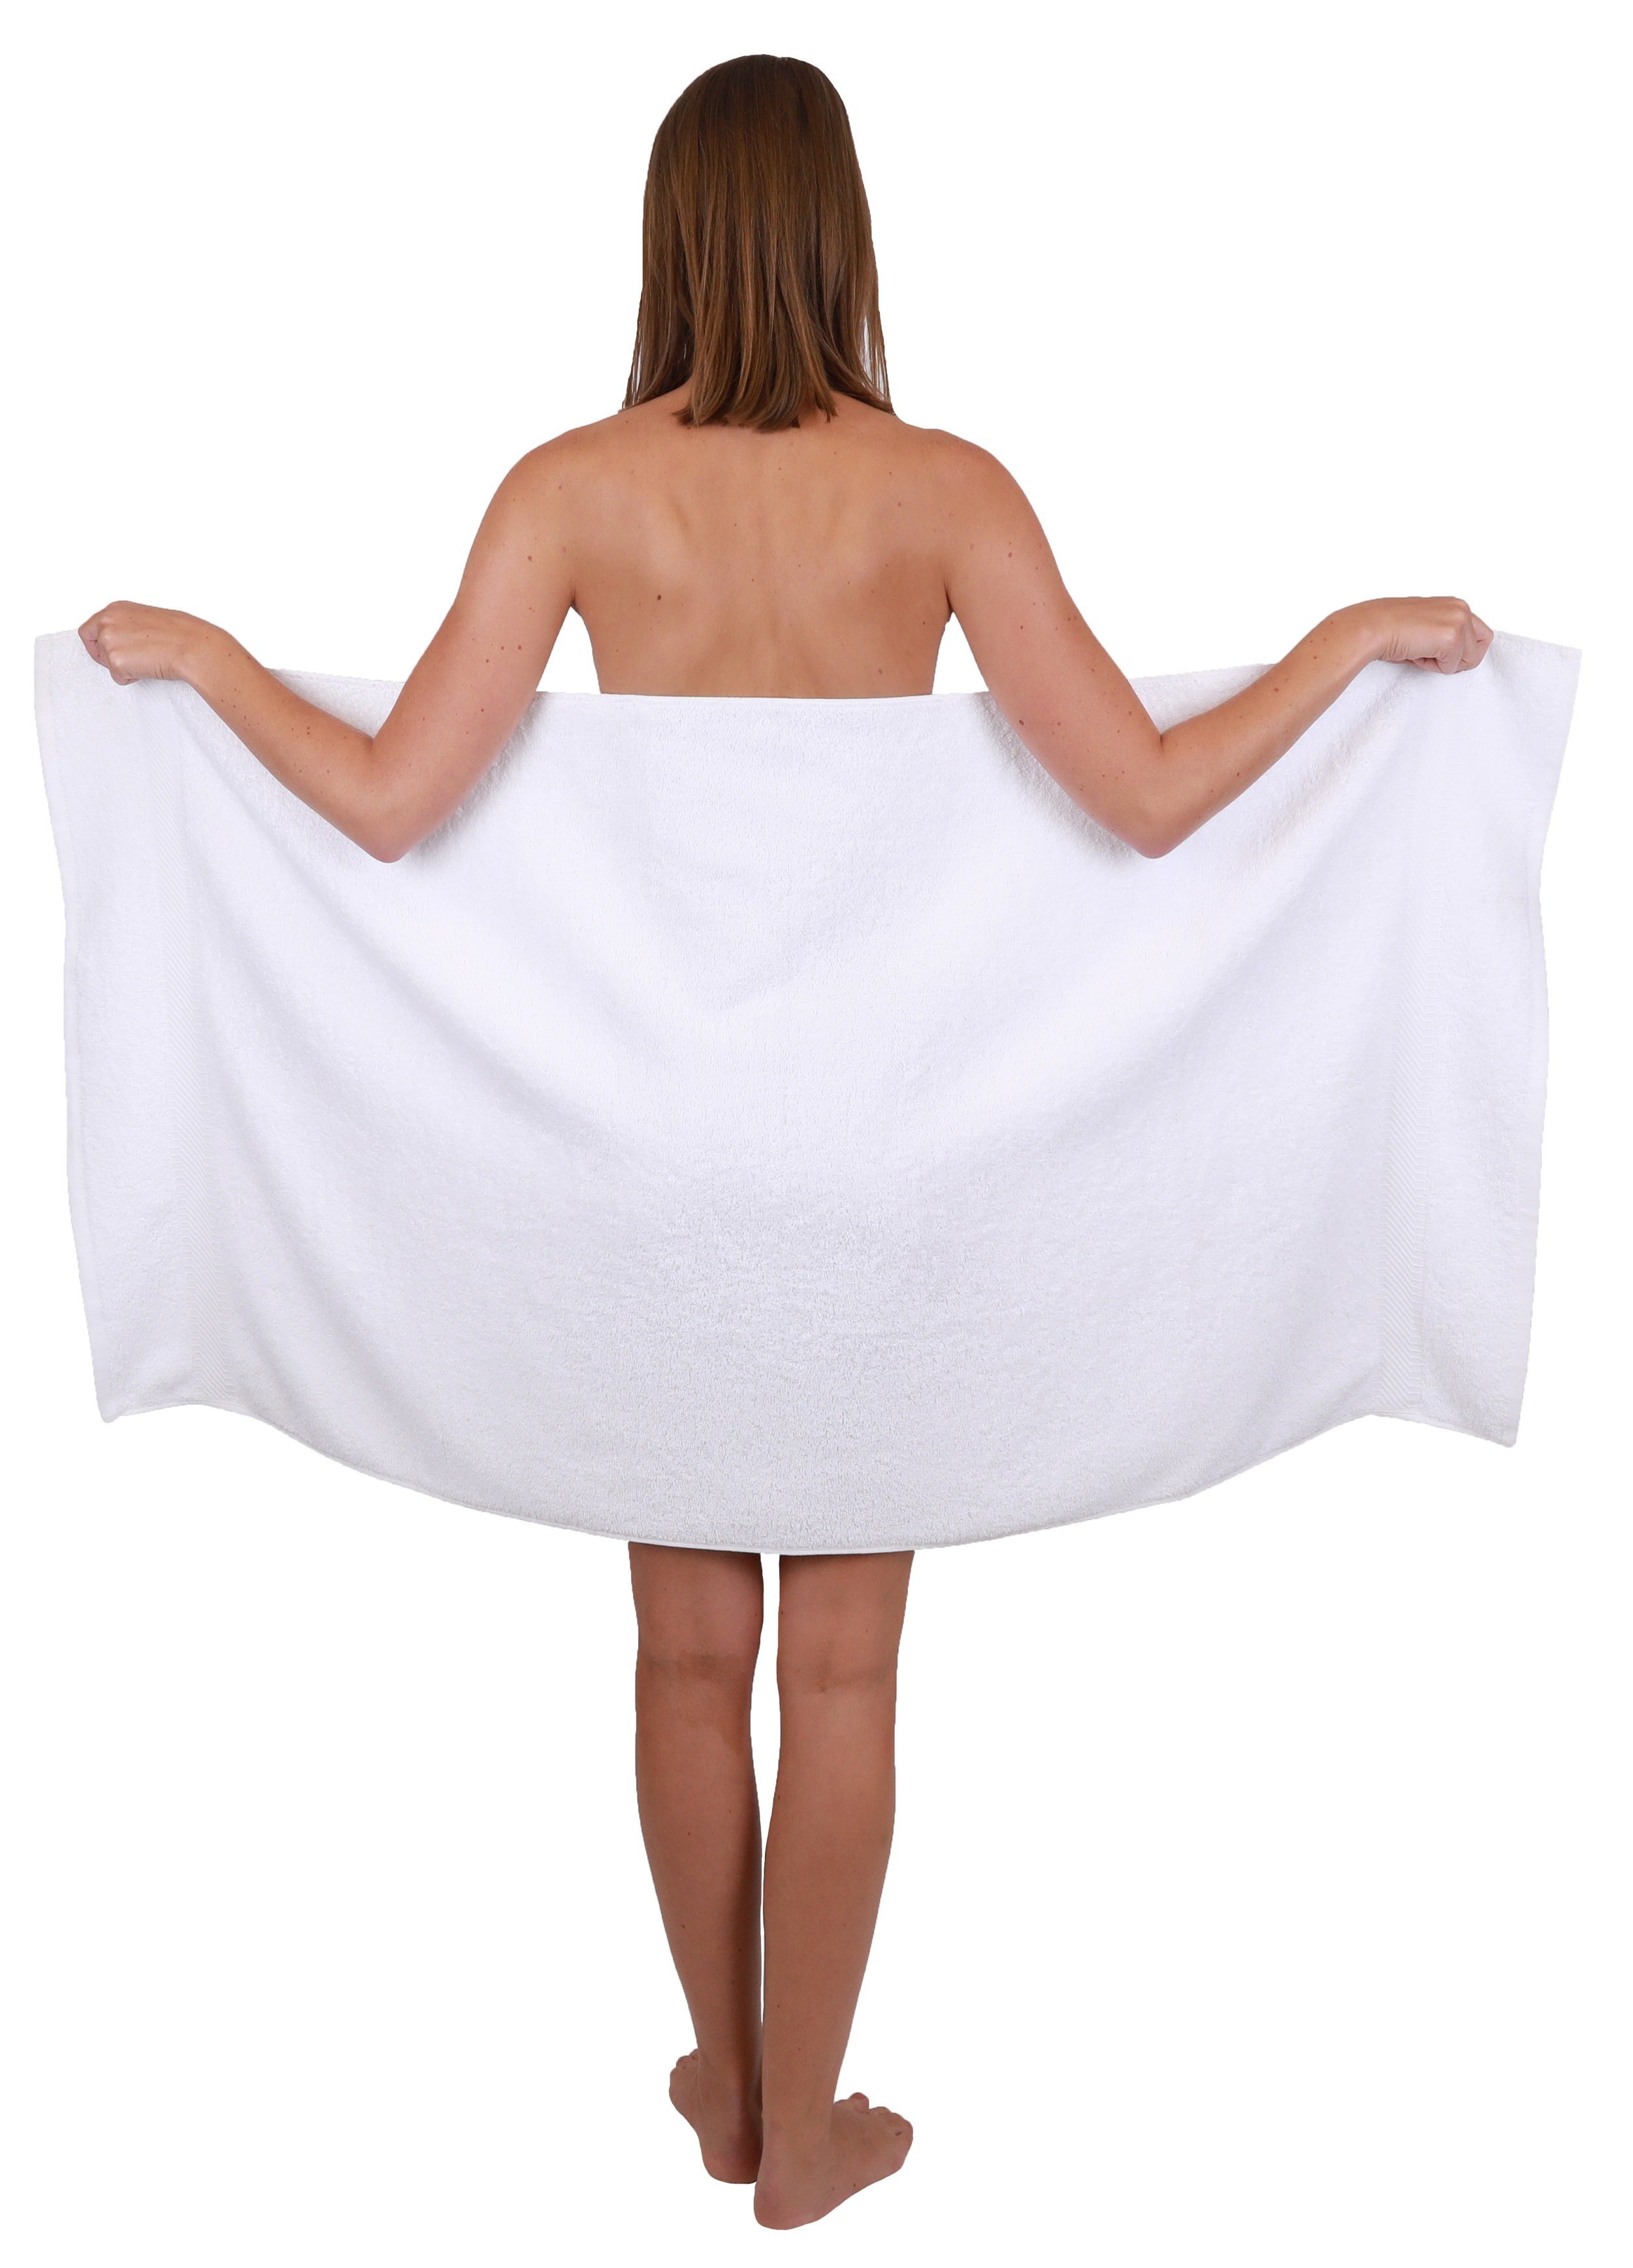 Betz Handtuch Set 10-tlg. Farbe 4 türkis, 100% Handtücher Duschtücher Baumwolle Set 6 Palermo und weiß